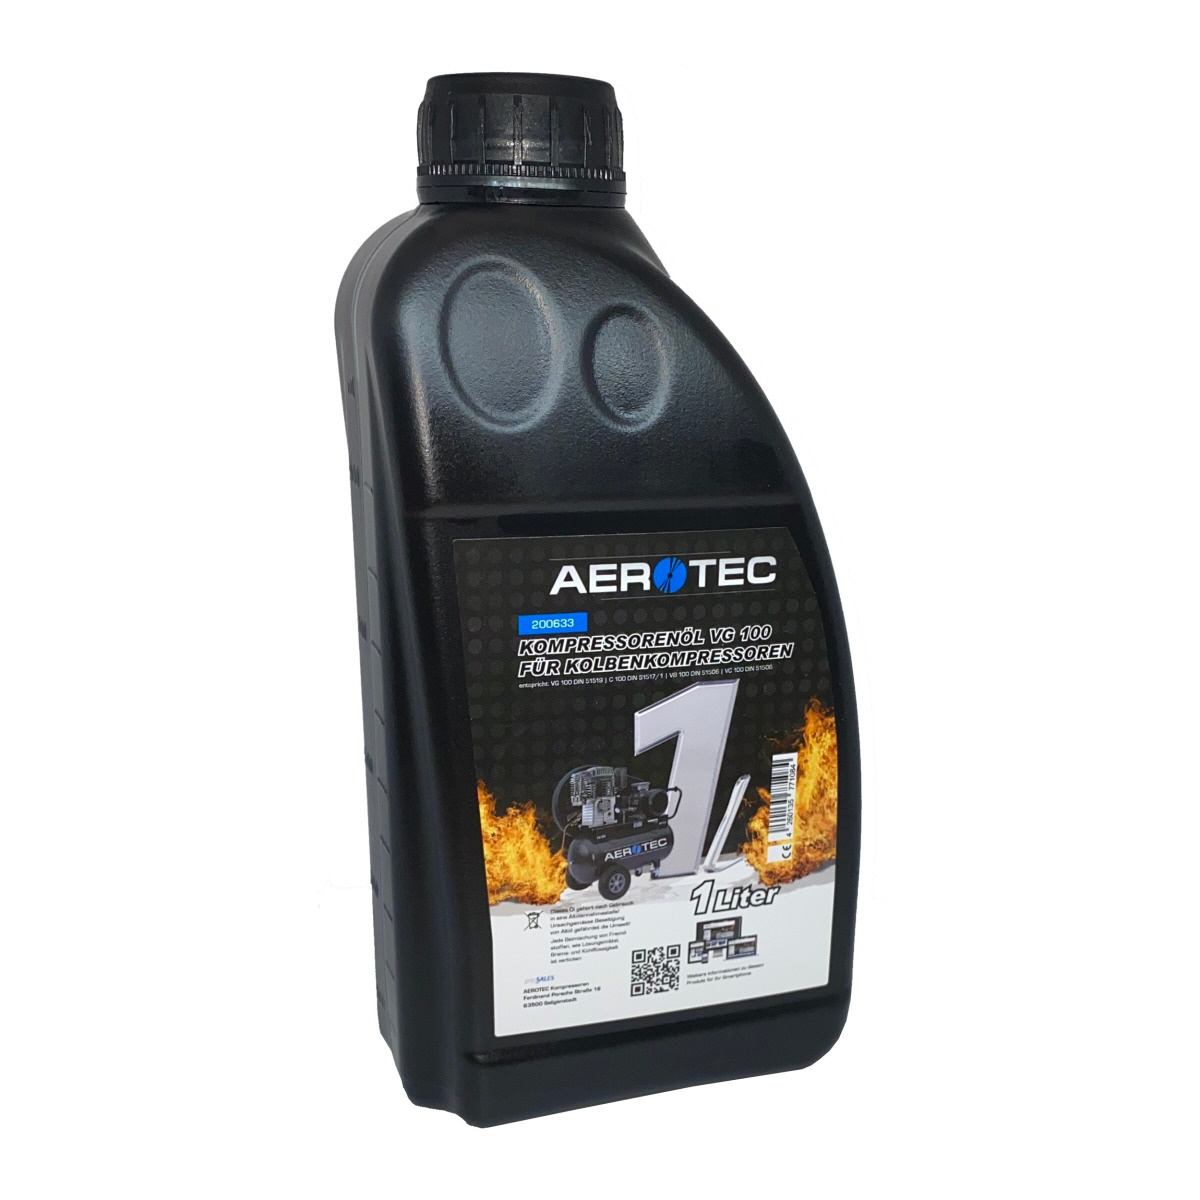 AEROTEC Kompressorenöl VG 100, 1 Liter | Hochwertiger Schmierstoff Kompressorenöl